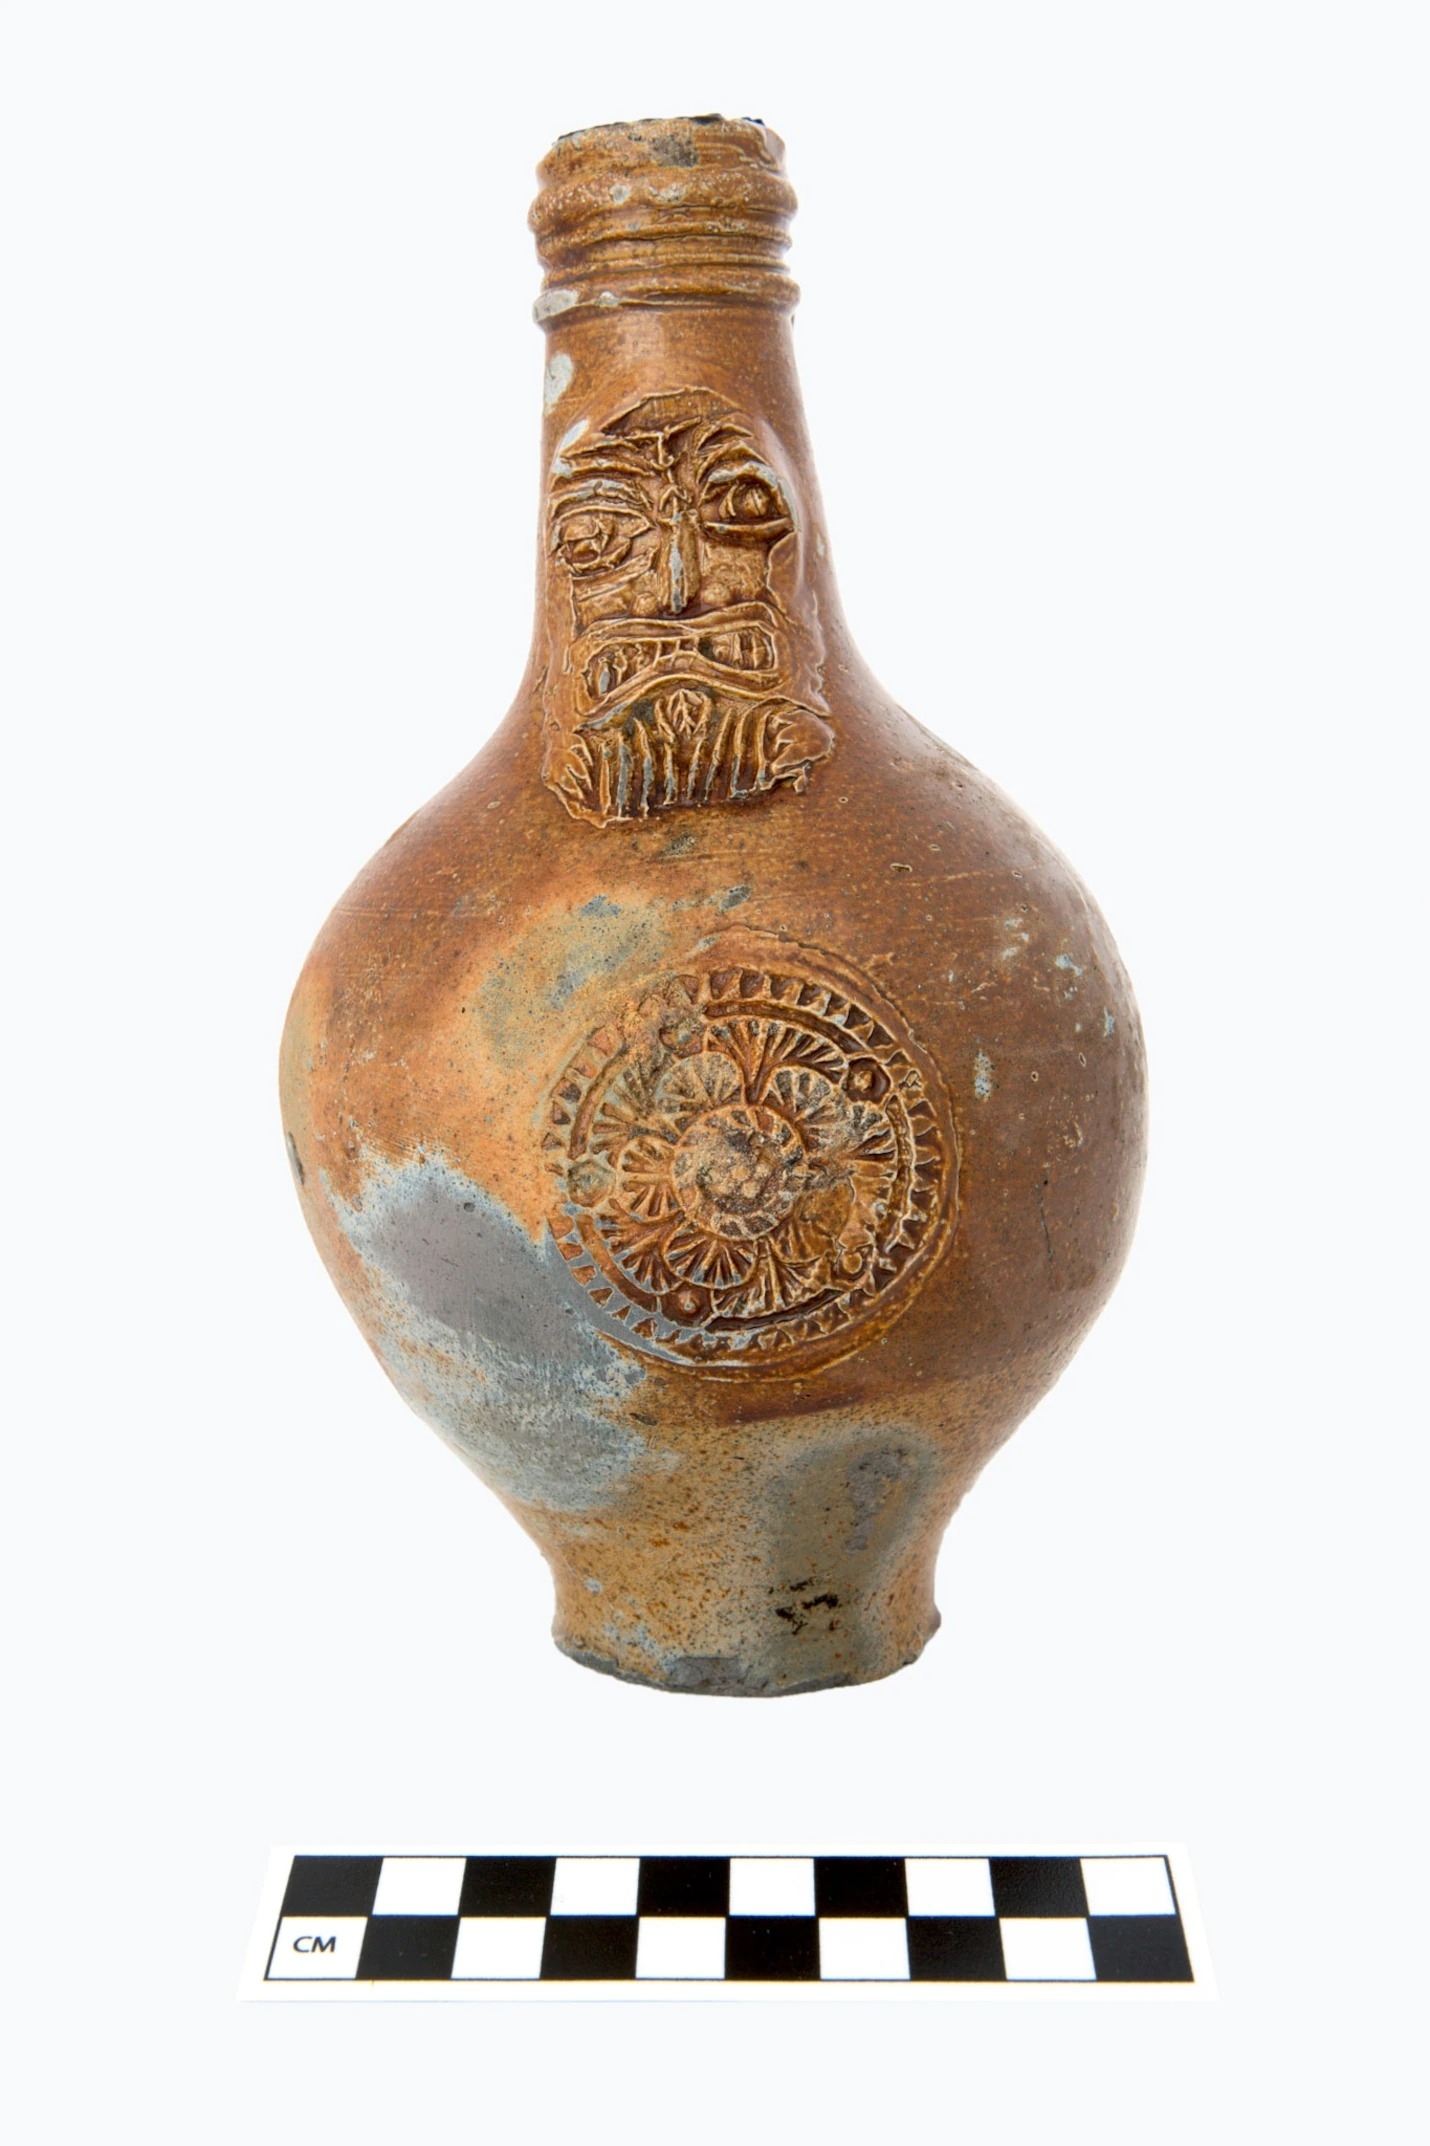 這件裝飾著虯髯人面的巴特曼水罐（Bartmann jug）是從沉船打撈出的17世紀文物之一。其他文物包括航海設備、衣物與鞋子，還有未開封的酒瓶。PHOTOGRAPHS COURTESY NORFOLK HISTORIC SHIPWRECKS